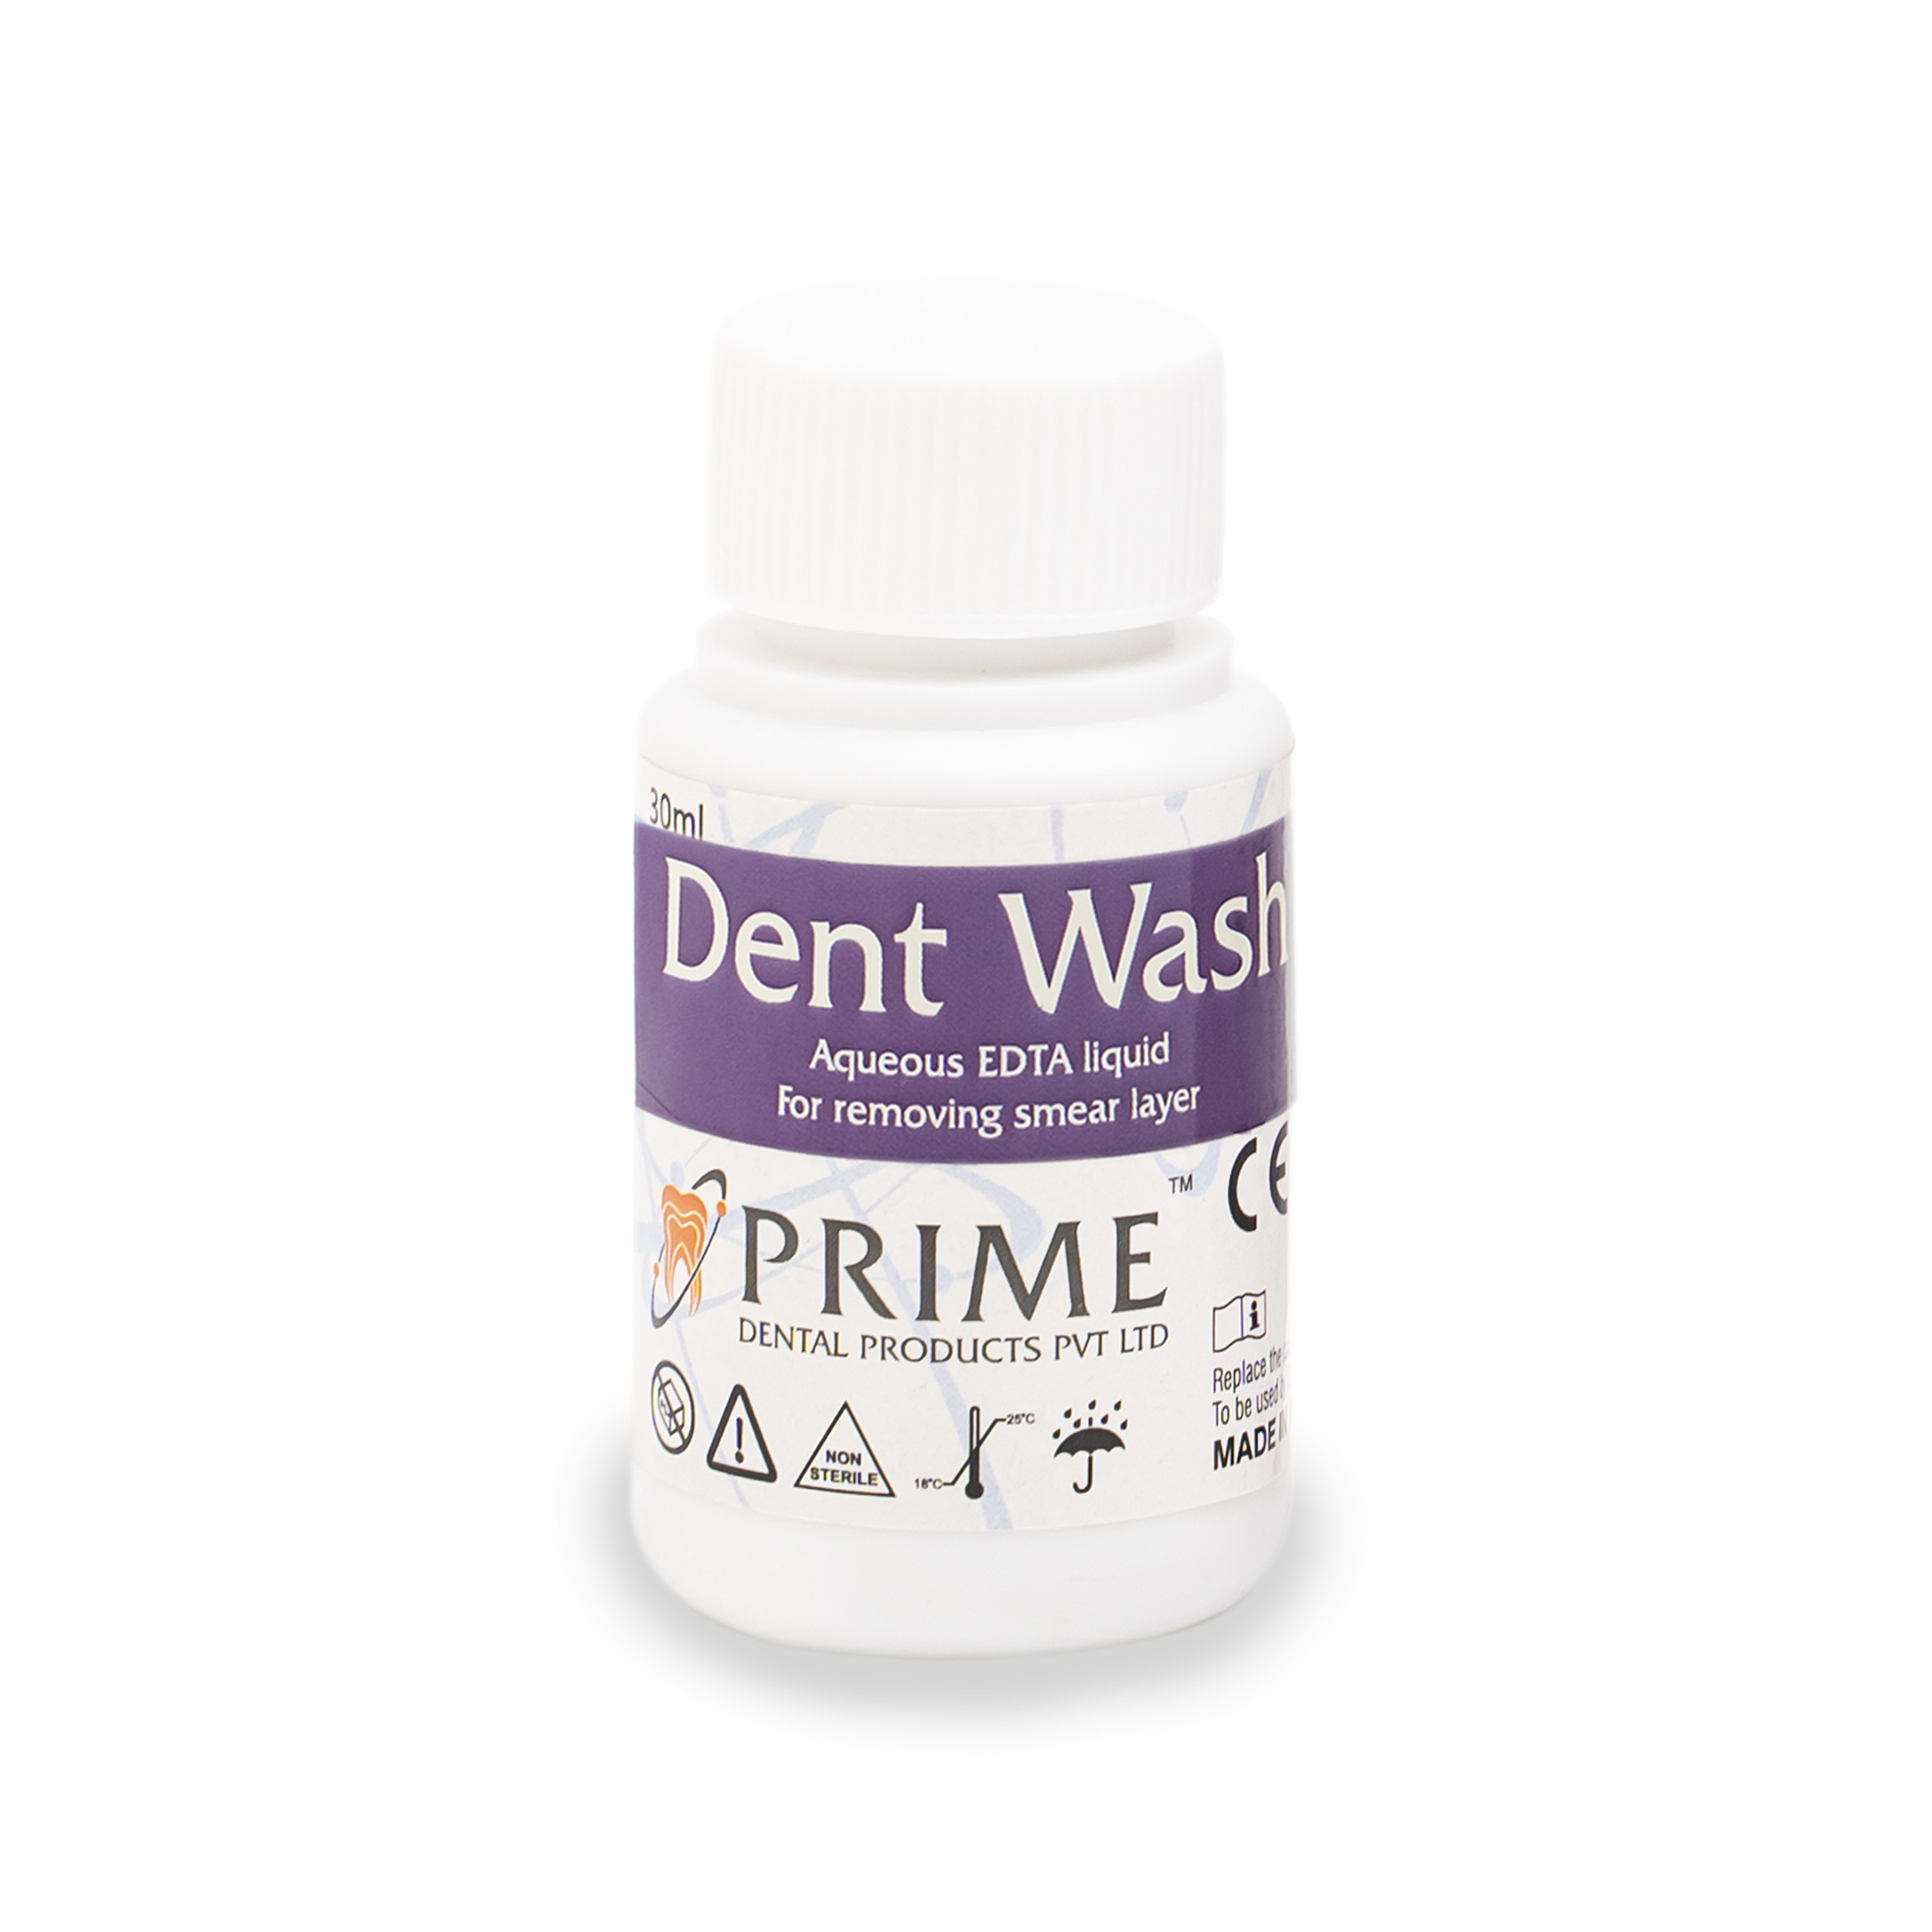 Prime Dent Wash